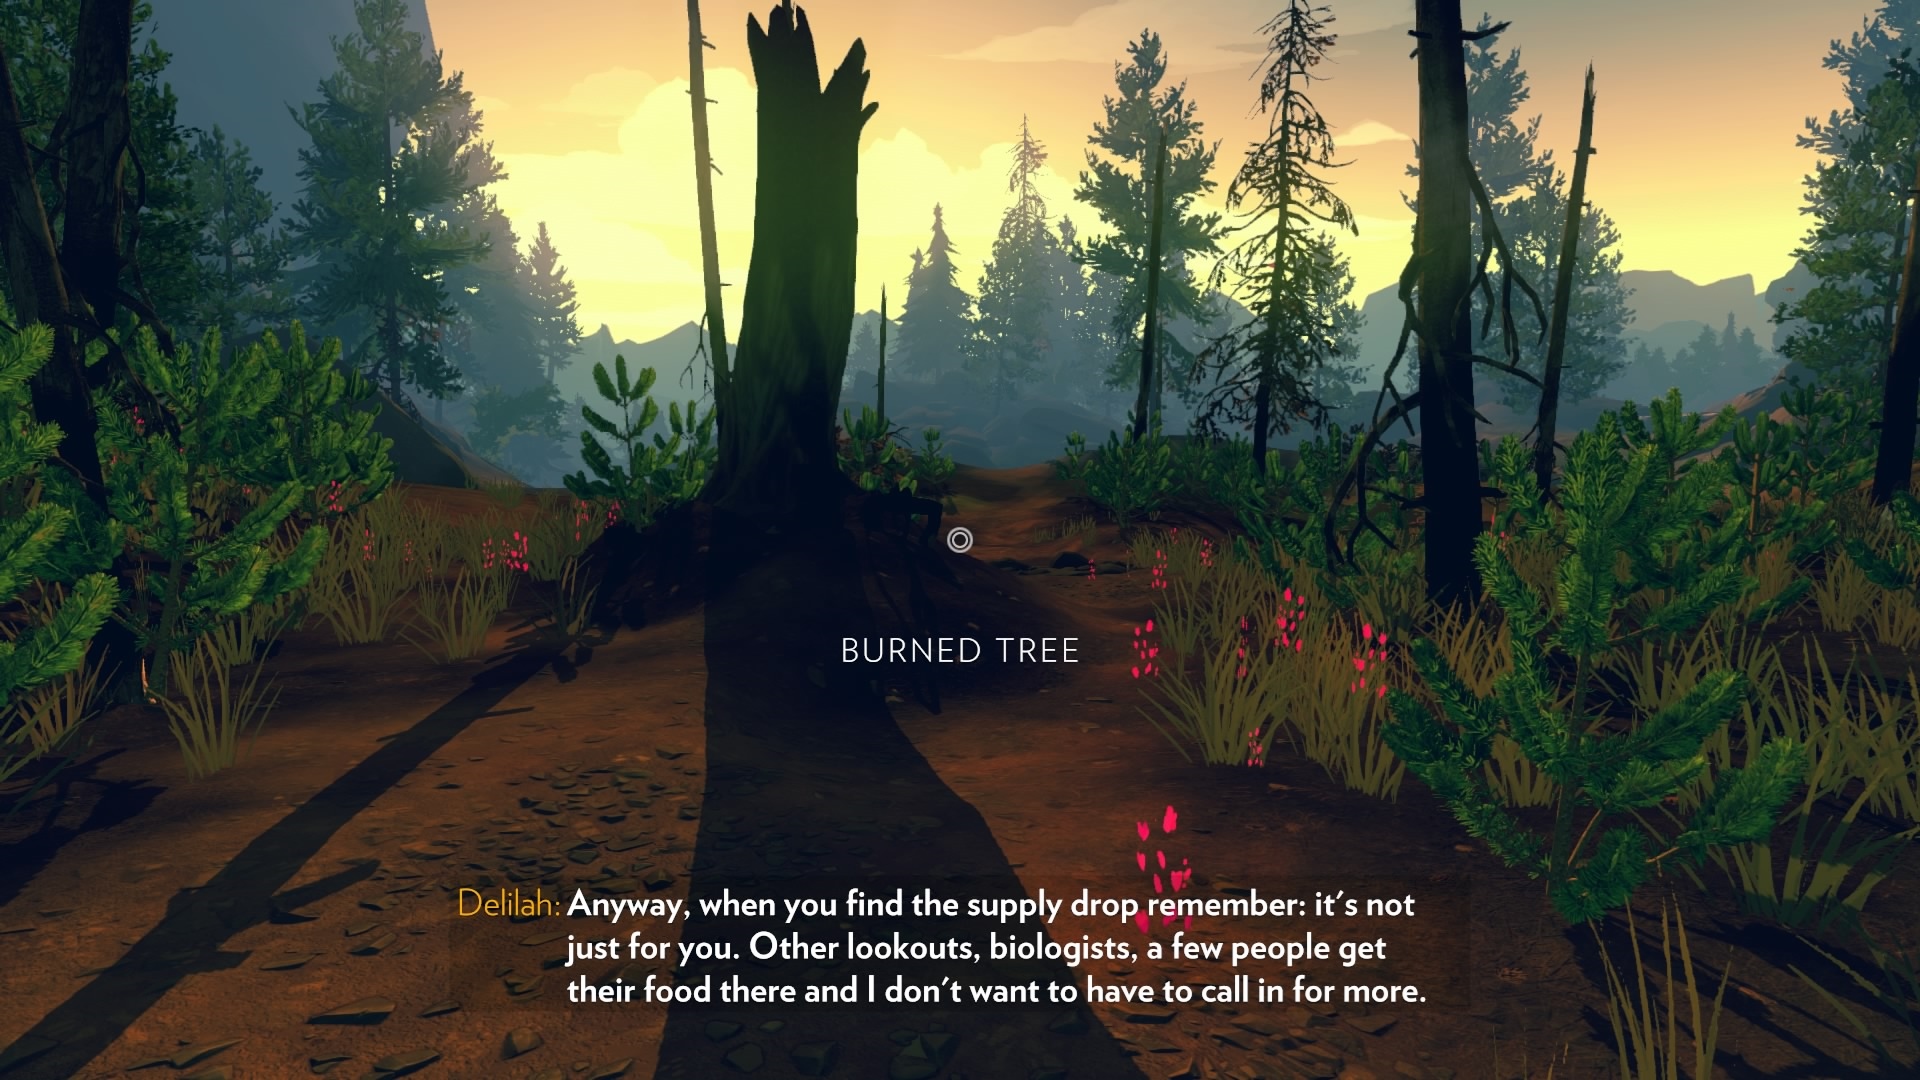 Firewatch Obas sa stane, e vm obrazovka hr vetkmi farbami: teraz paradoxne na mieste, kde kedysi vyhorel les.